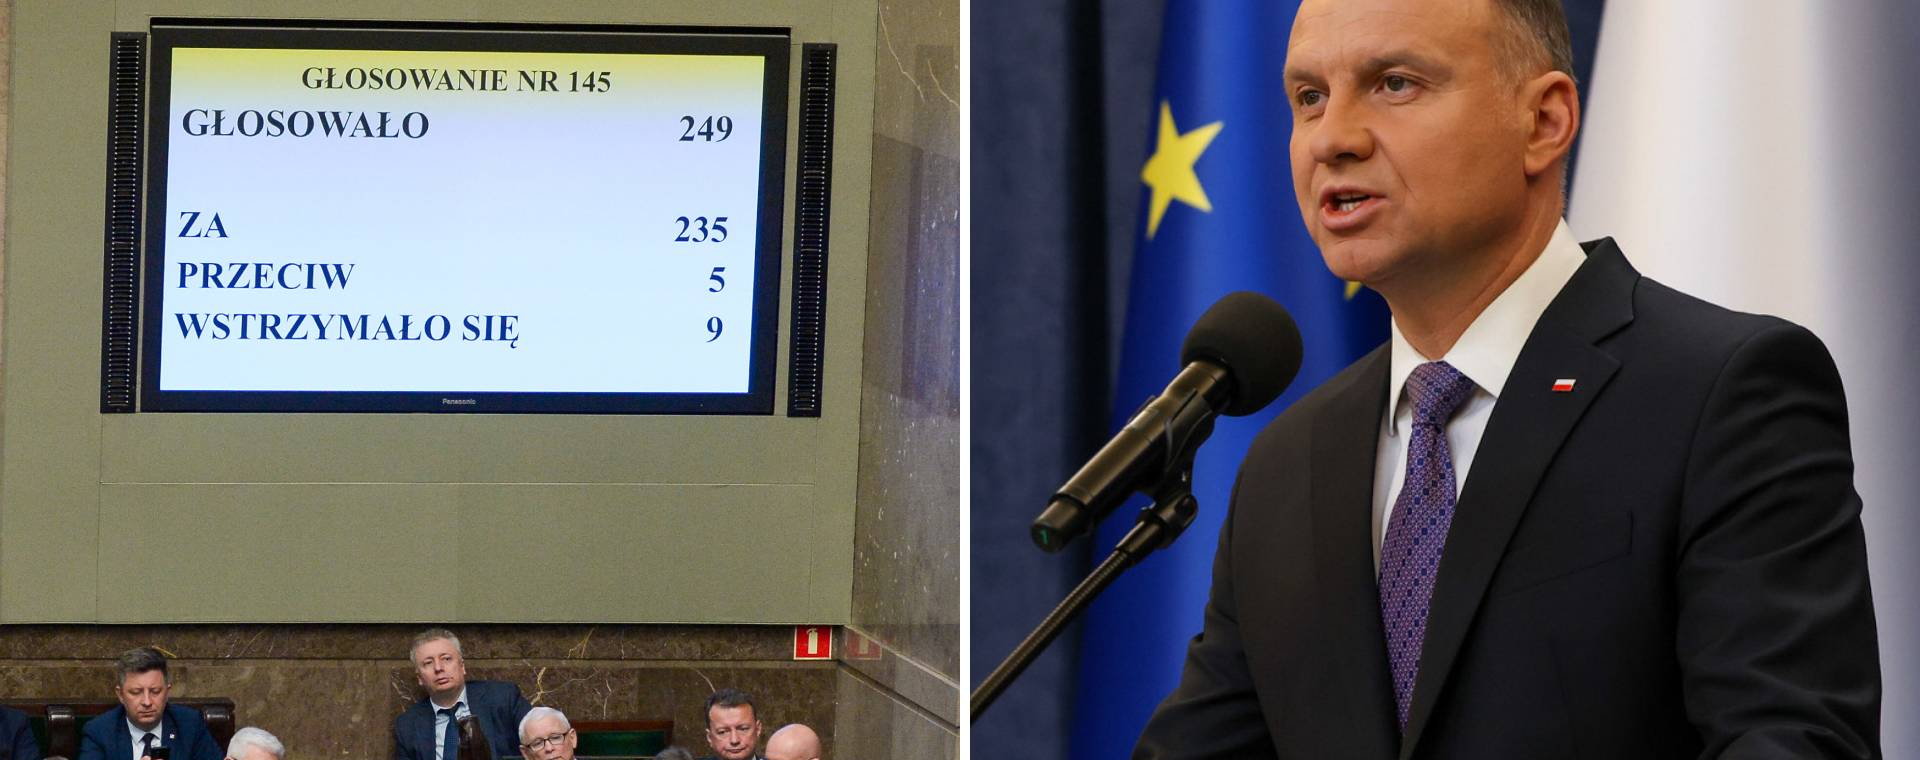 W piątek w Sejmie za prezydenckim projektem nowelizacji zagłosowało 228 posłów PiS, żaden nie był przeciw ani nie wstrzymał się od głosu. W sumie za było 249 posłów